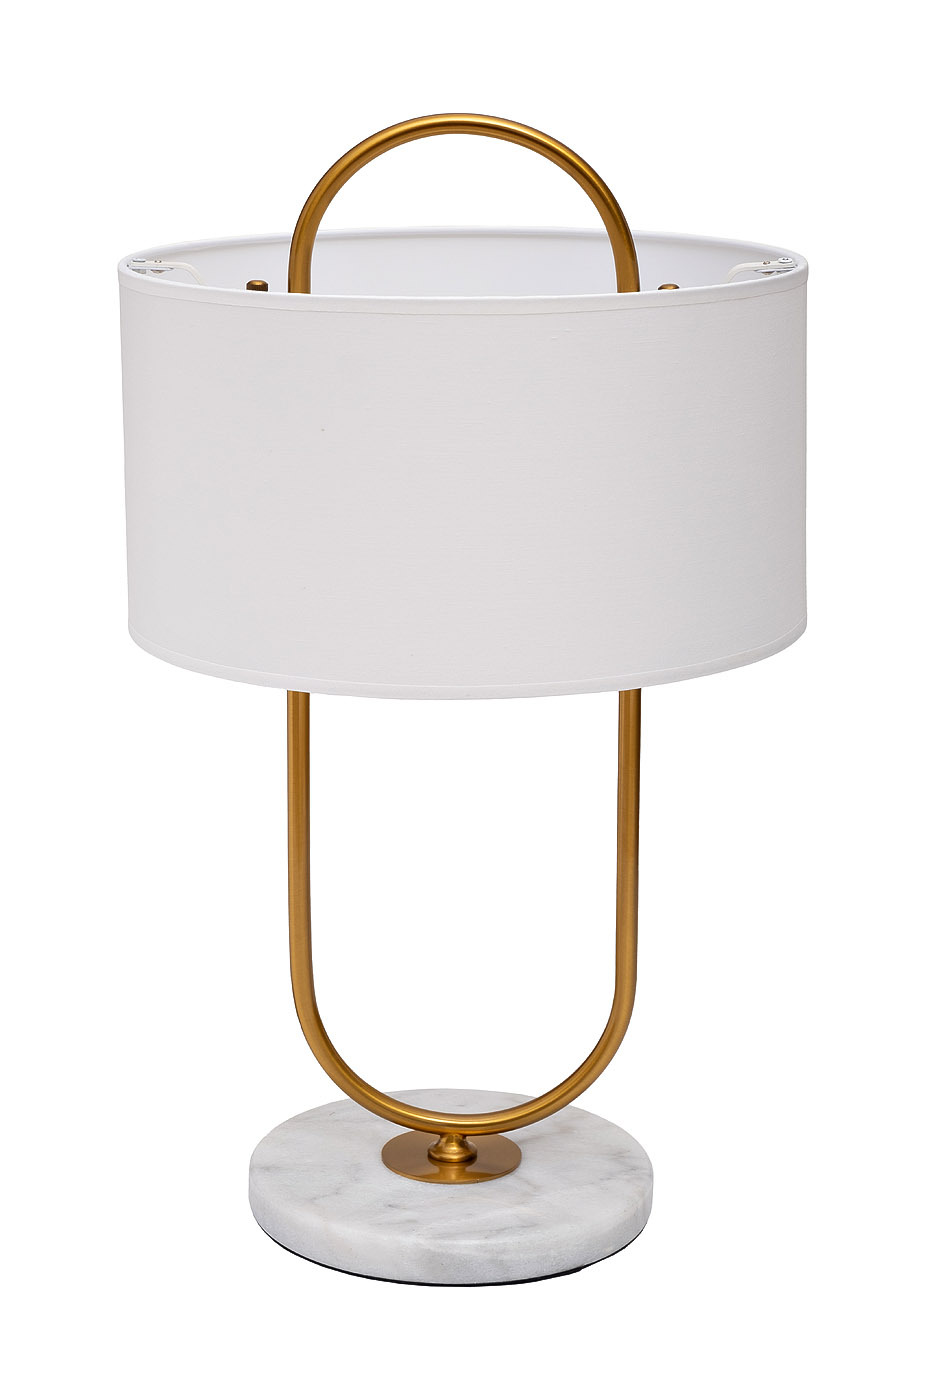 Декоративные настольные лампы — функциональные, стильные, уютные